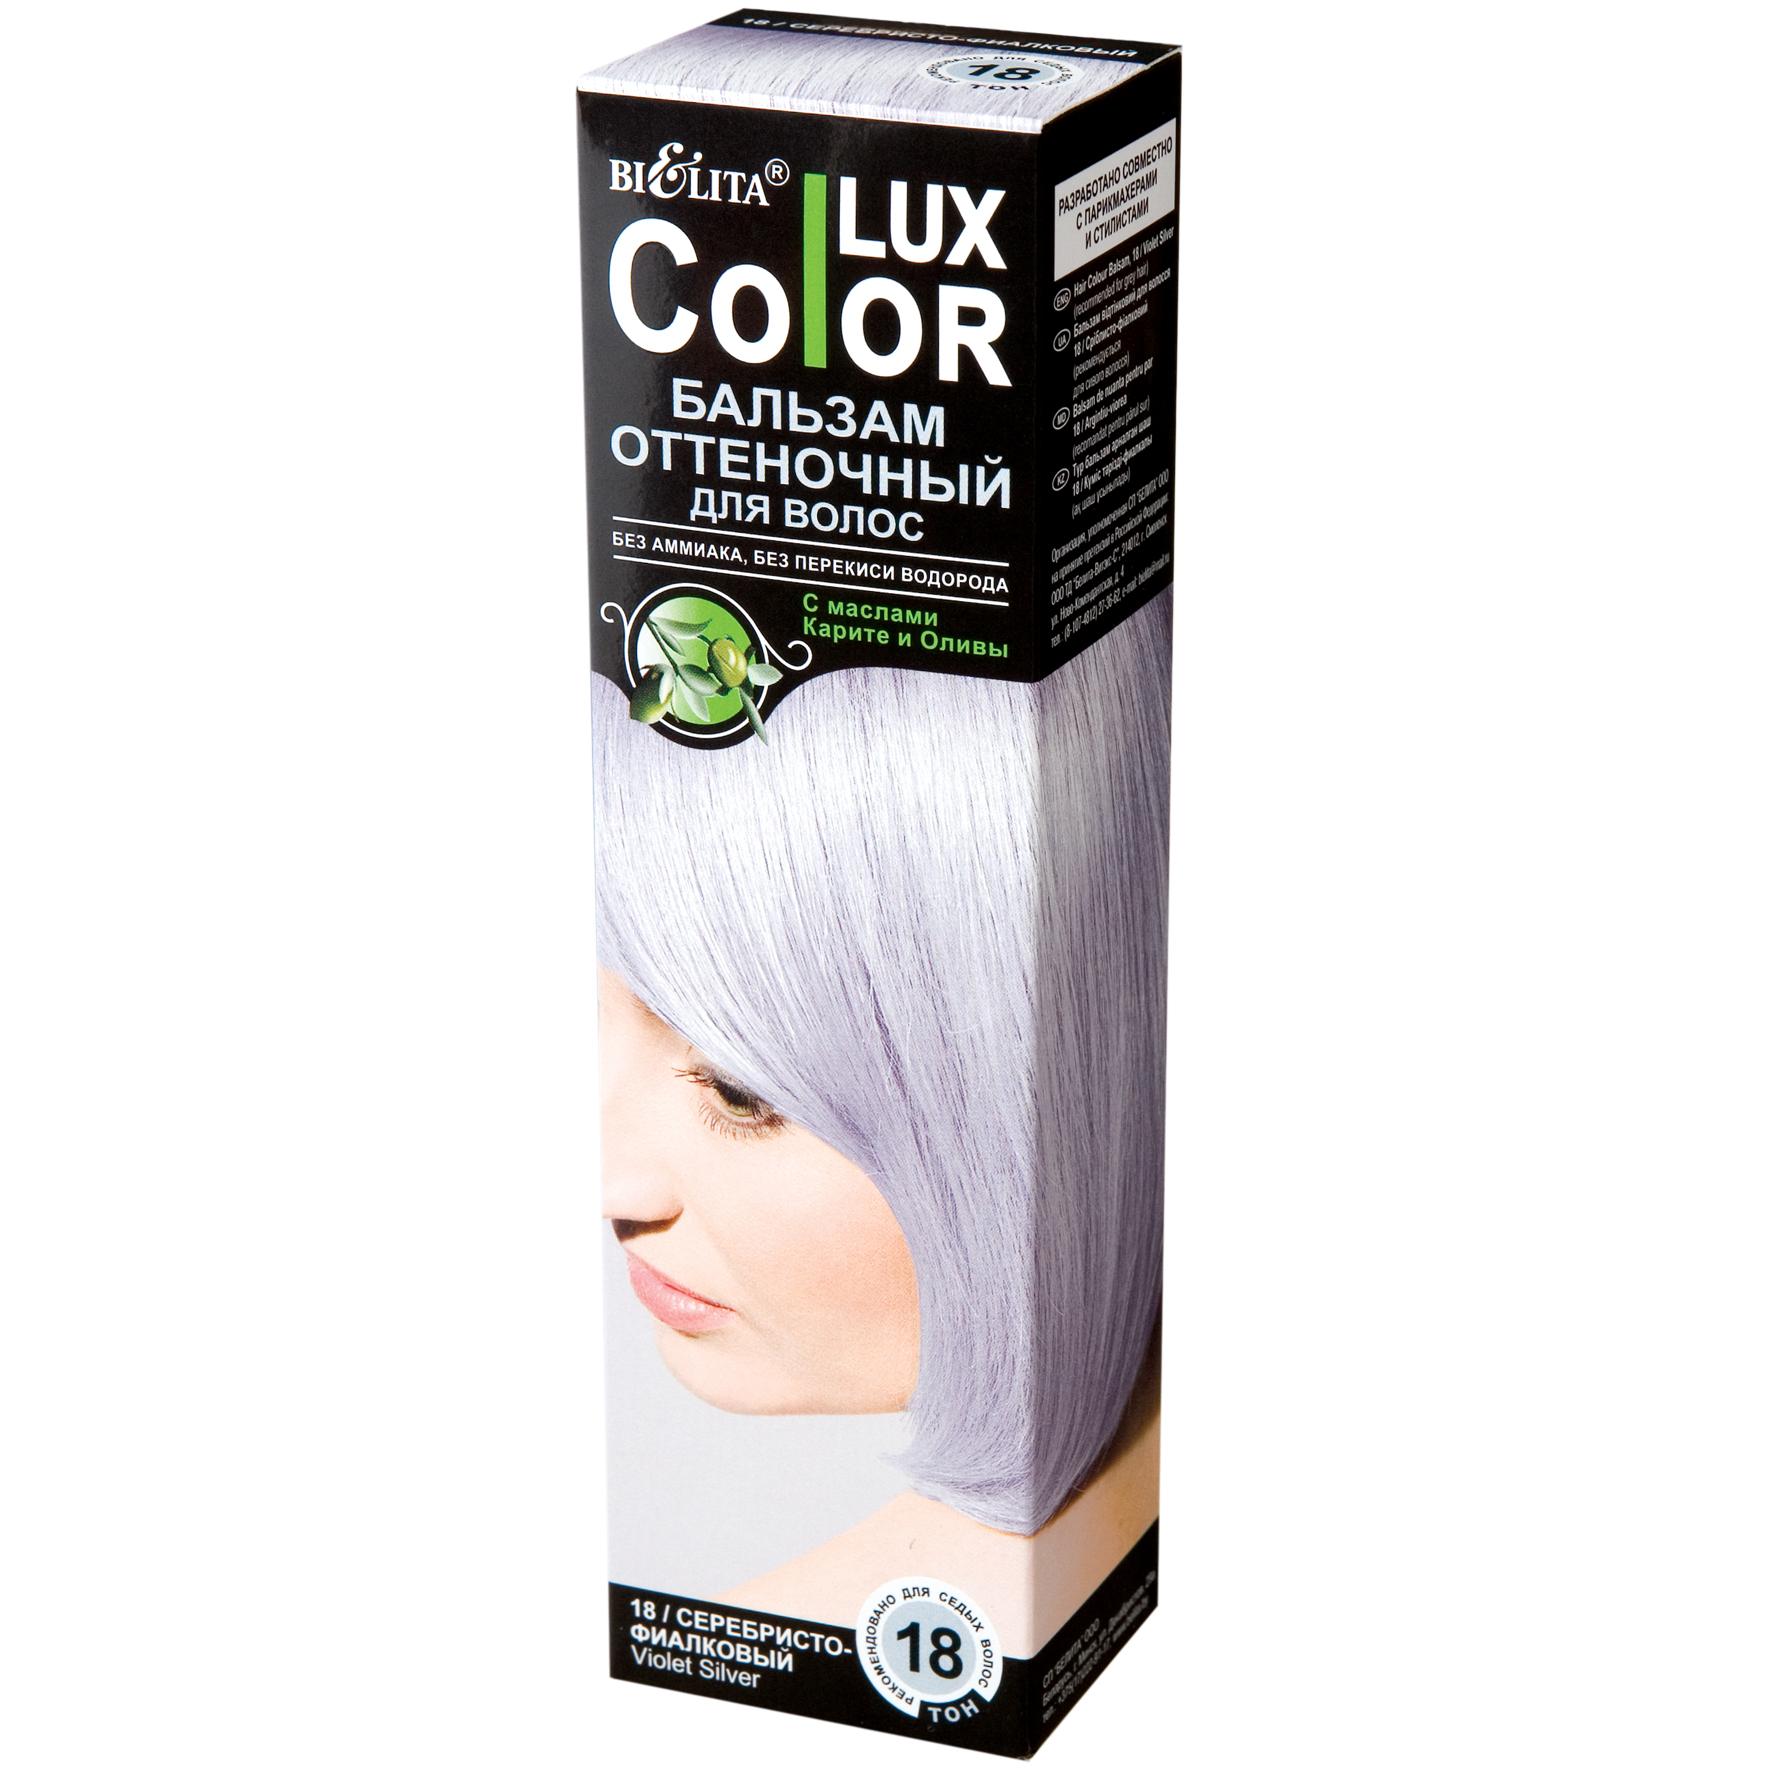 Бальзам оттеночный для волос BIELITA Тон 18 серебристо фиалковый color lux 100 мл - фото 1